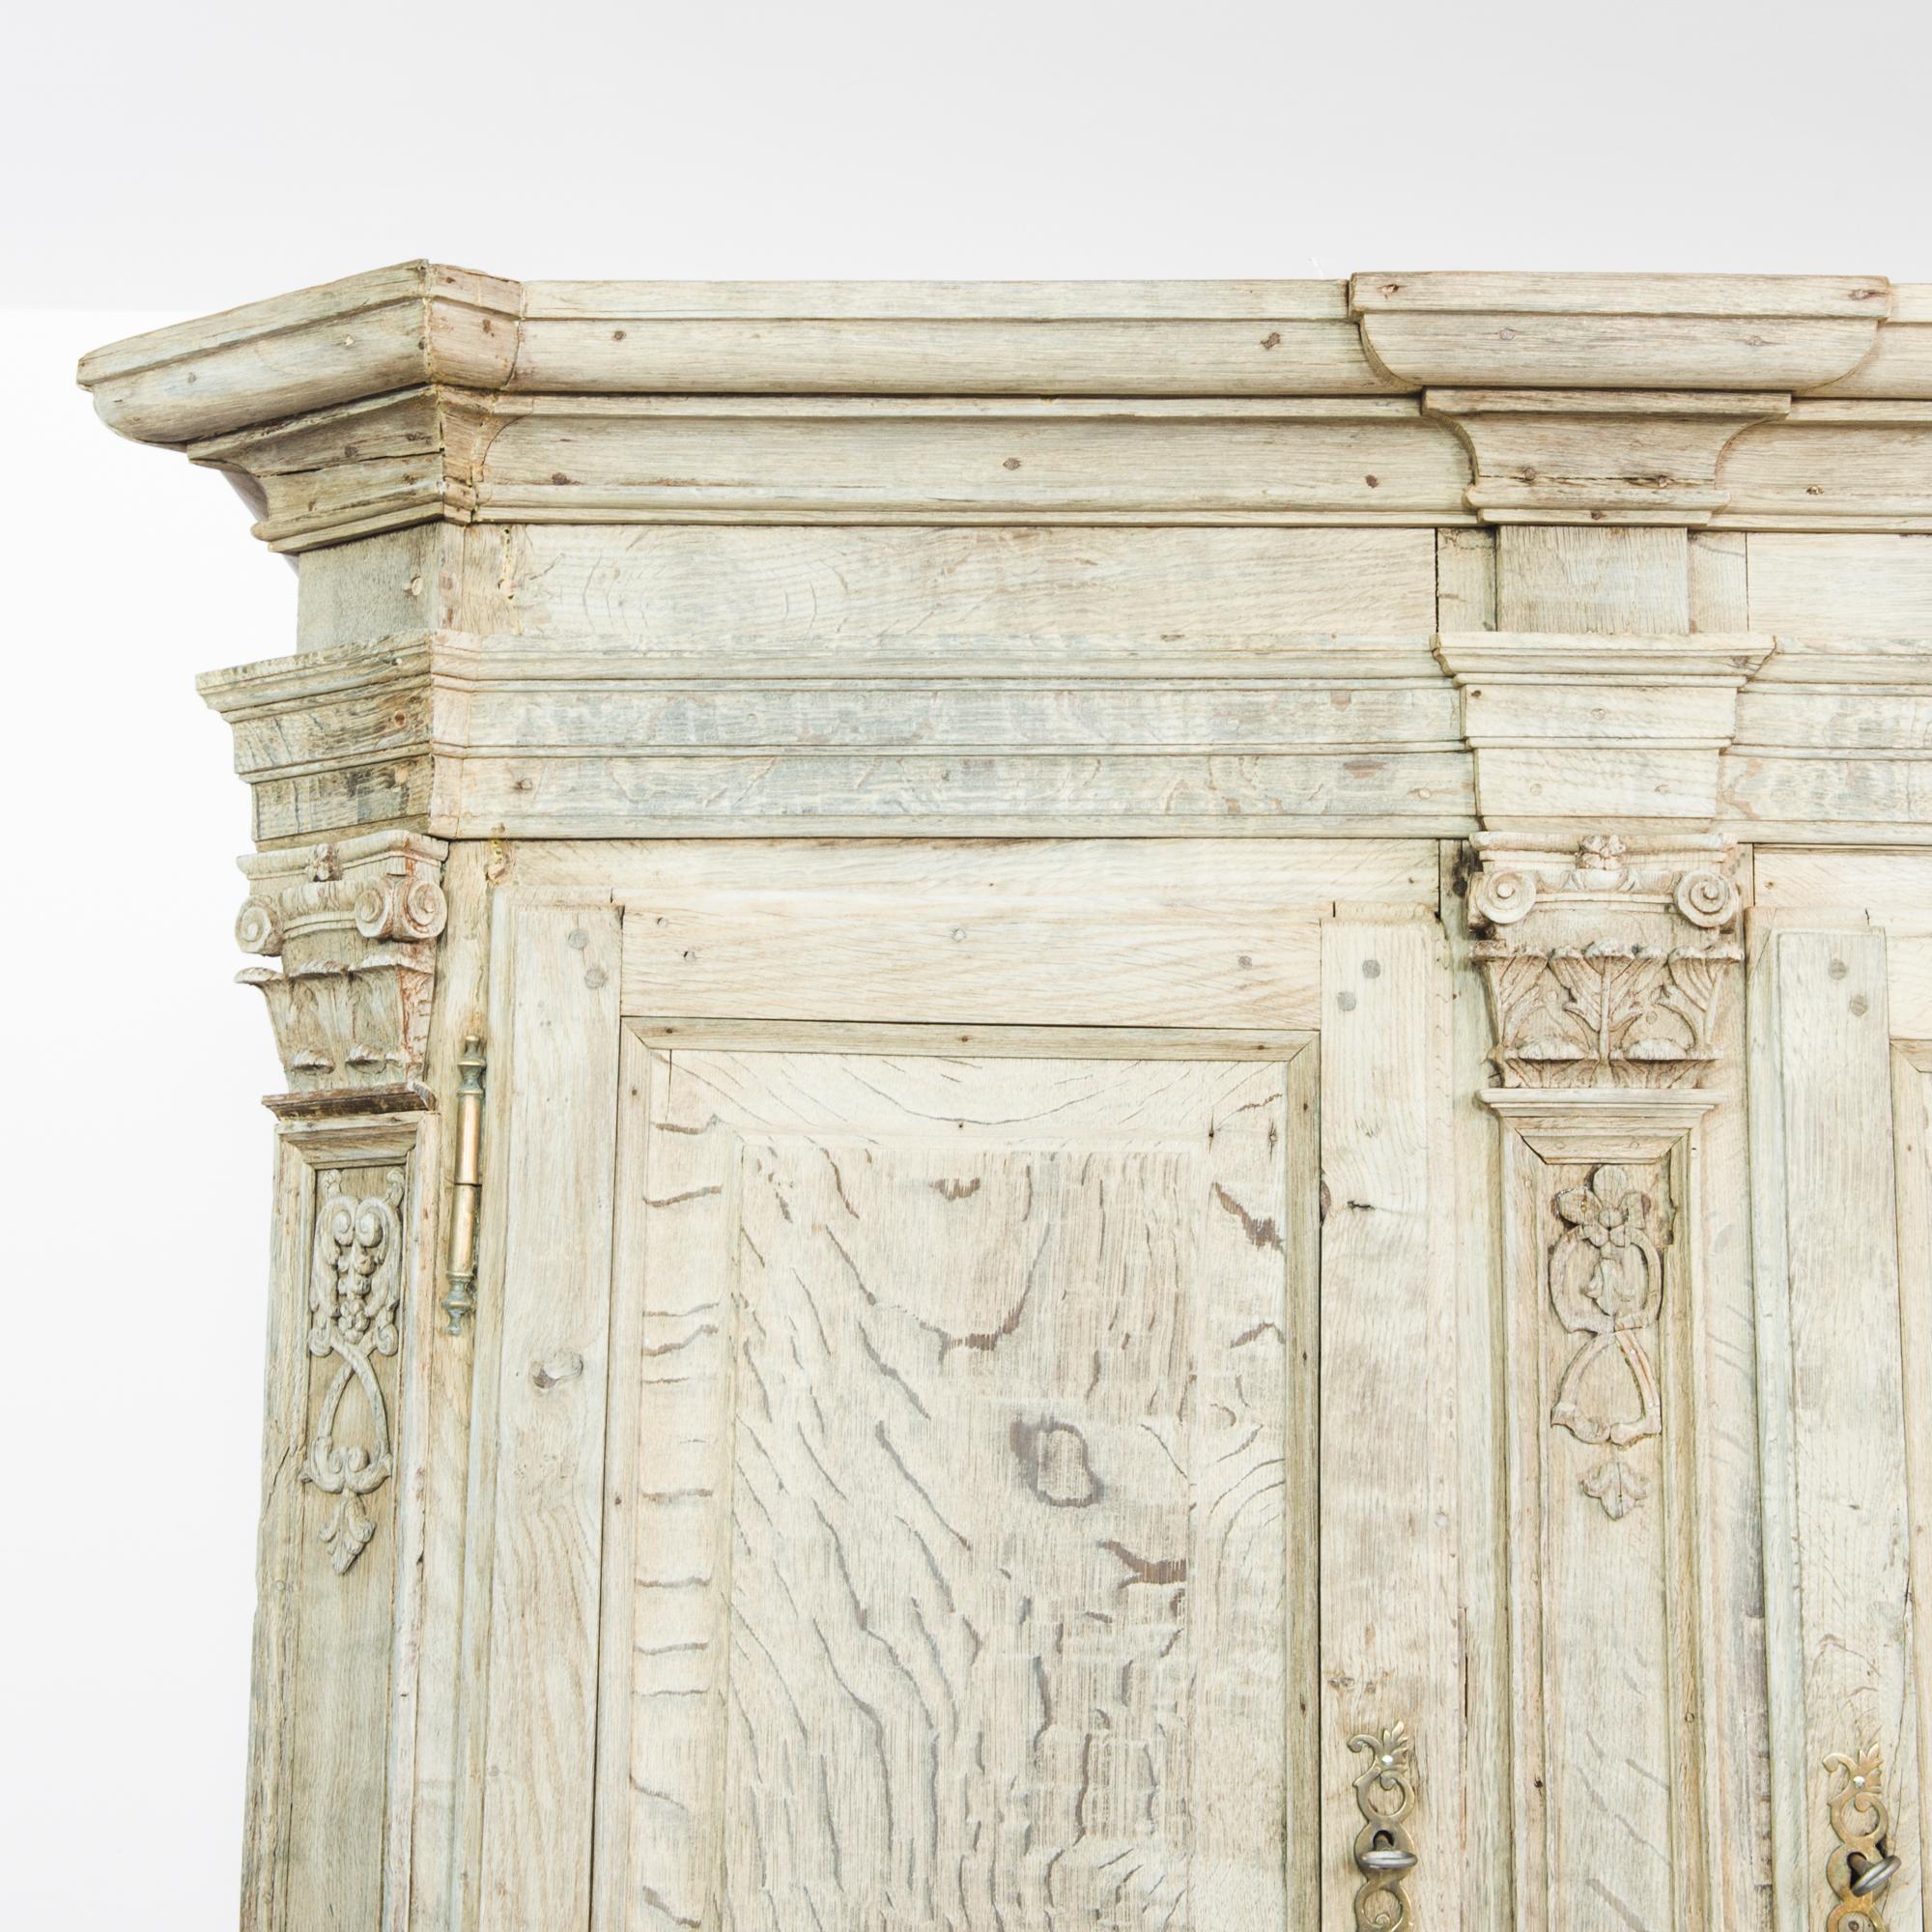 Ein Schrank aus gebleichter Eiche aus Belgien, hergestellt um 1780. Dieser hervorragend erhaltene Schrank aus dem 18. Jahrhundert ist ein außergewöhnlicher Fund. Fast so breit wie hoch, verfügt dieses Möbelstück über zwei Ebenen mit verschließbaren